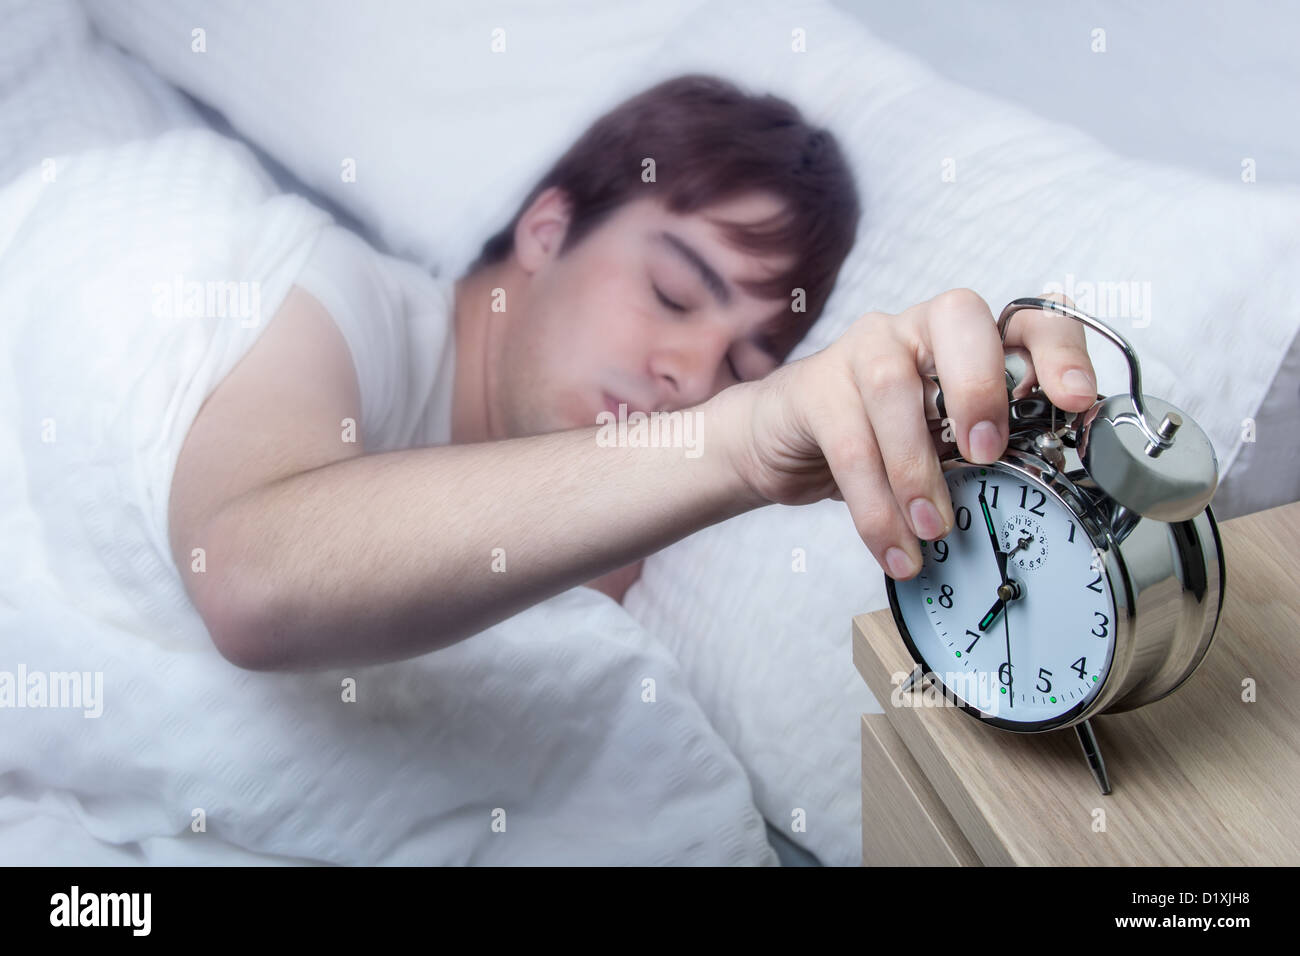 Cerca de un antiguo reloj de alarma, joven apagarlo todavía medio dormido. Foto de stock